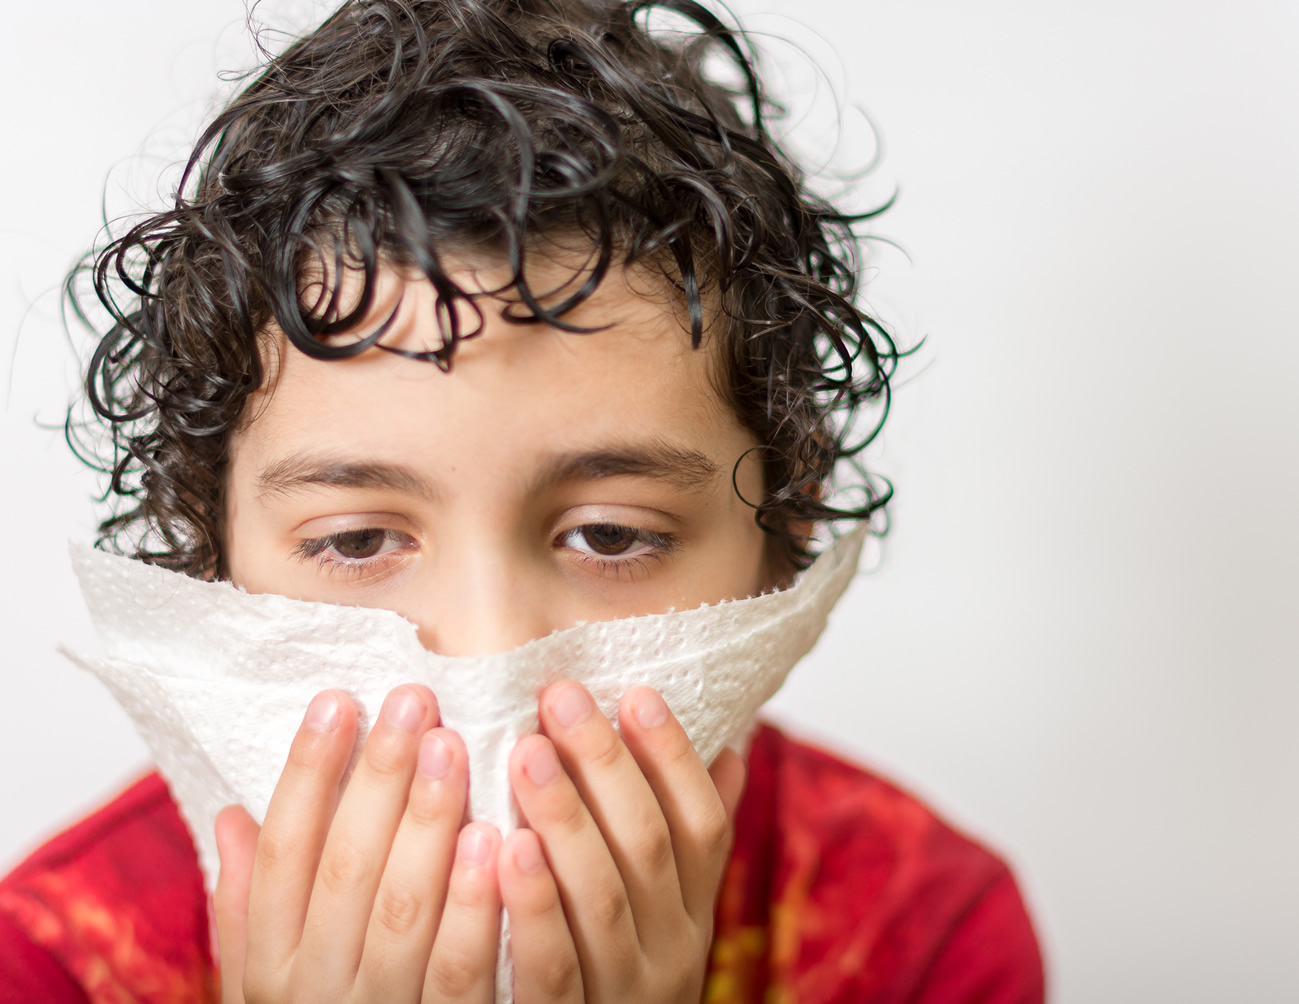 allergies-in-children-cold-flu